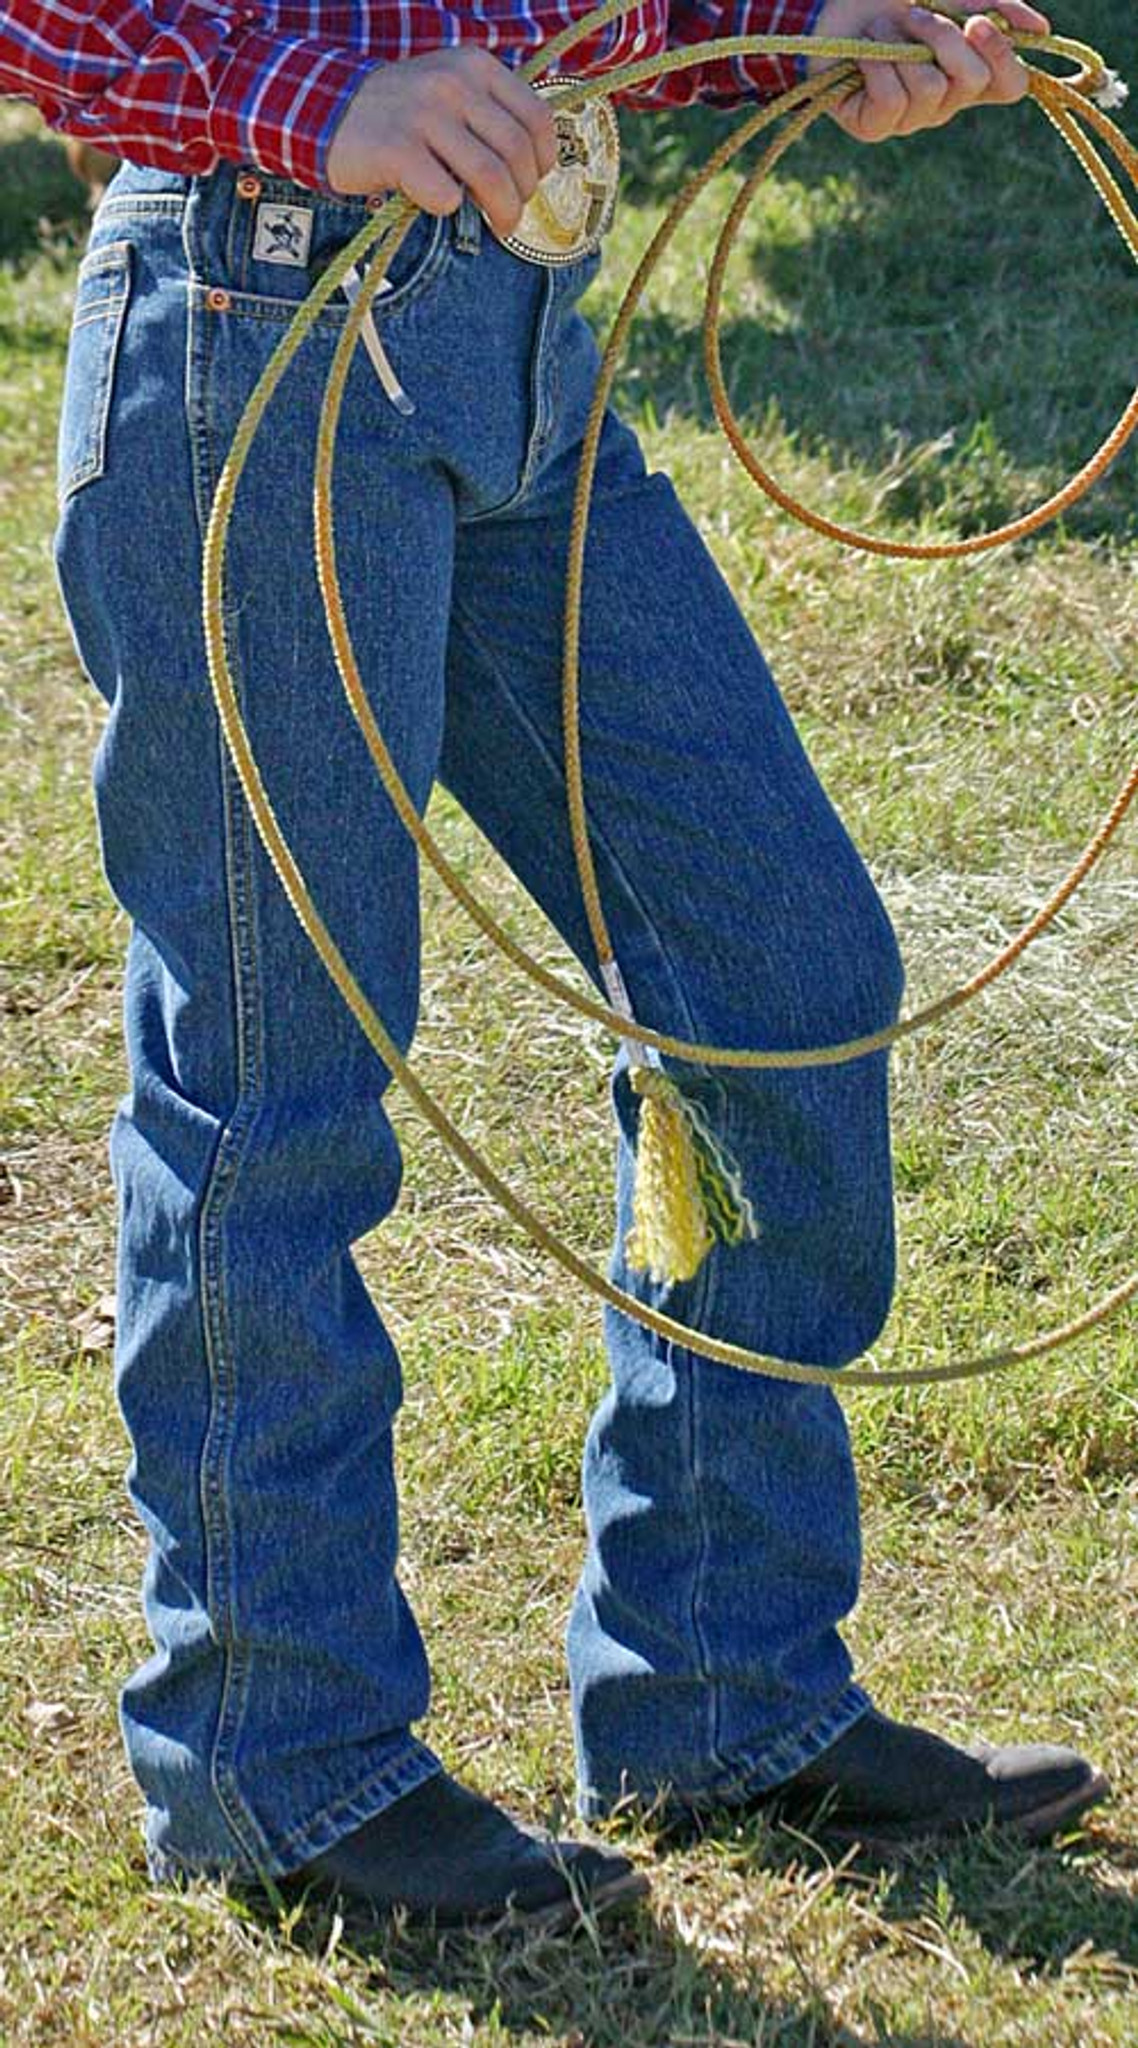 Cinch Jeans - Boys Original Fit Jean (Sizes 8-18)